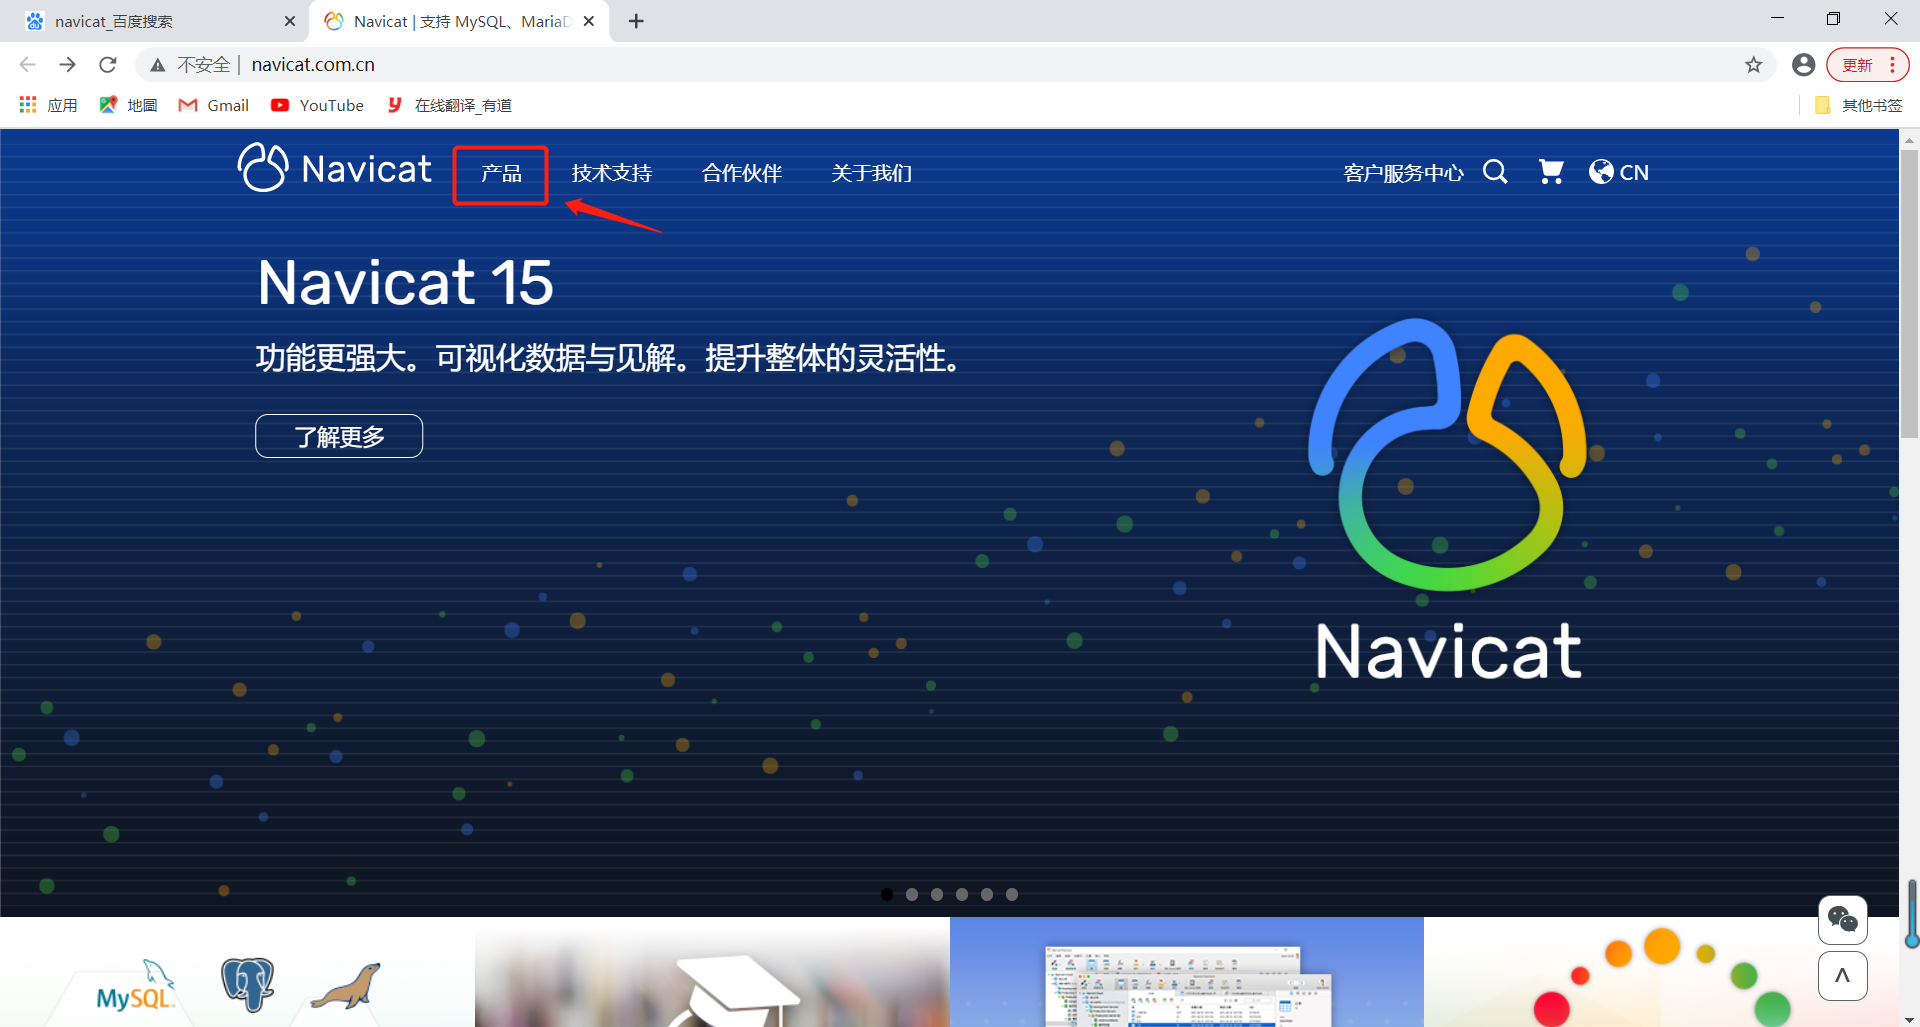 Navicat Premium 16.2.11 download the new